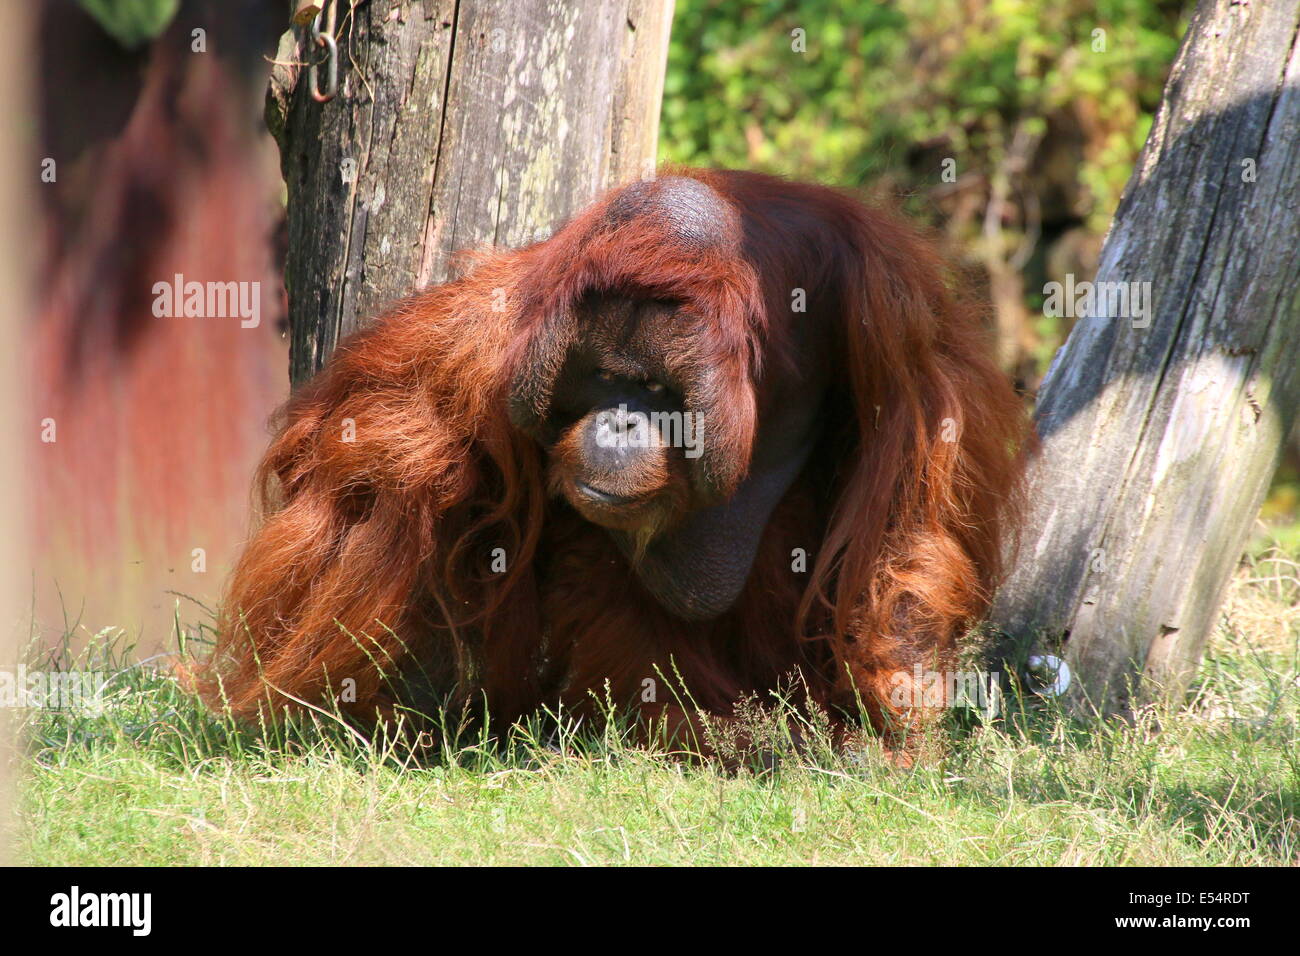 Mature male (Bornean) orangutan (Pongo pygmaeus) walking on the ground Stock Photo